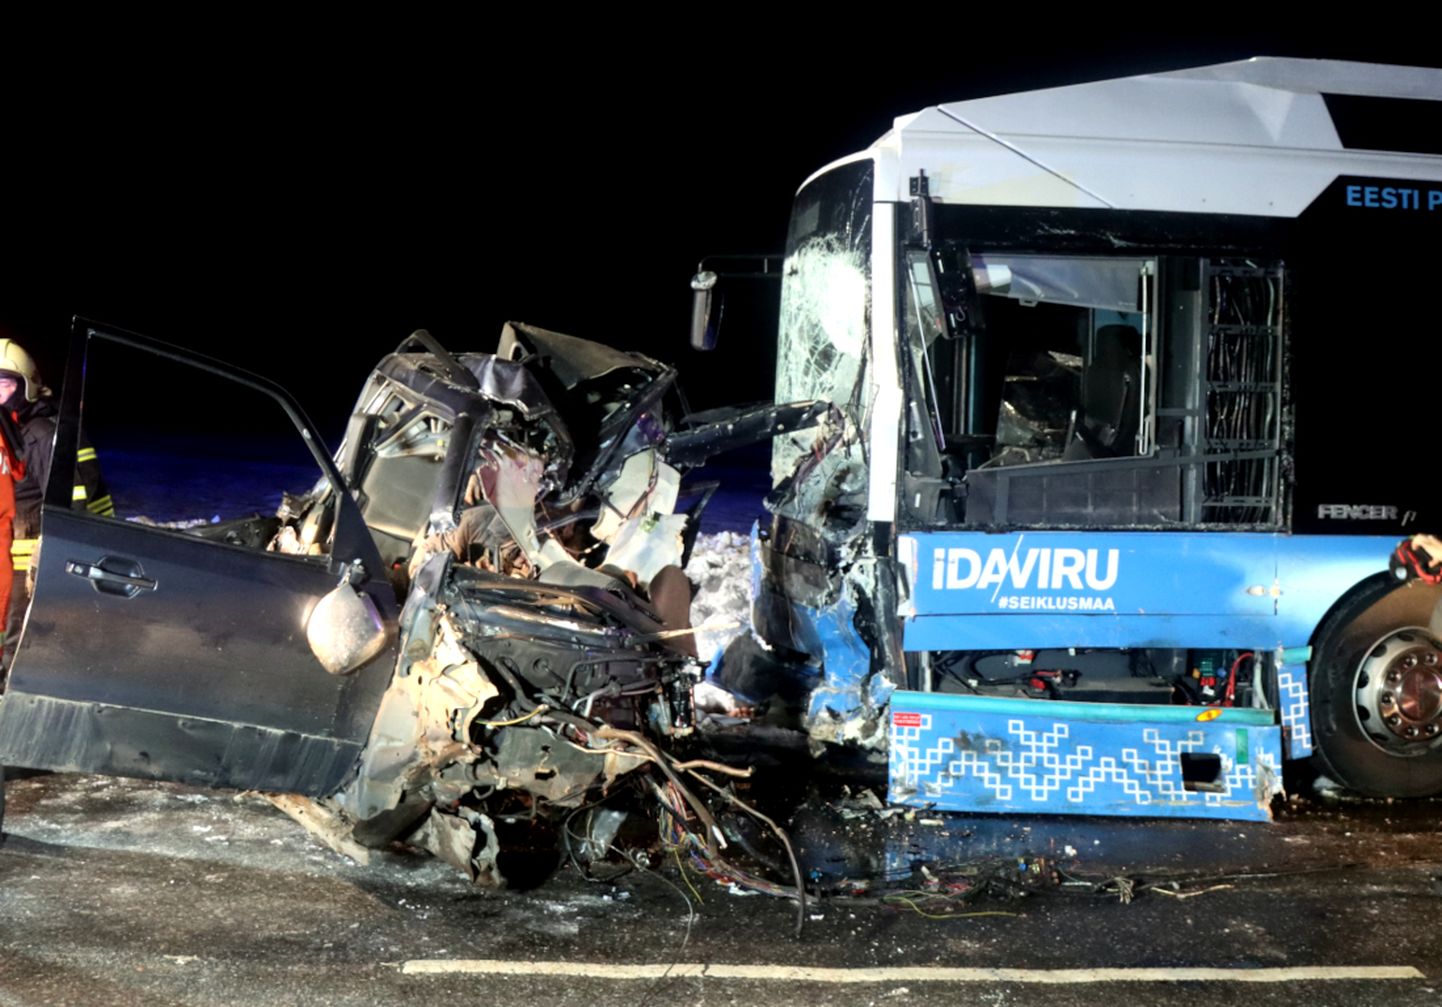 Kahe sõiduauto ja bussi osalusel toimunud avariis Ida-Virumaal hukkus neljapäeval kolm inimest.